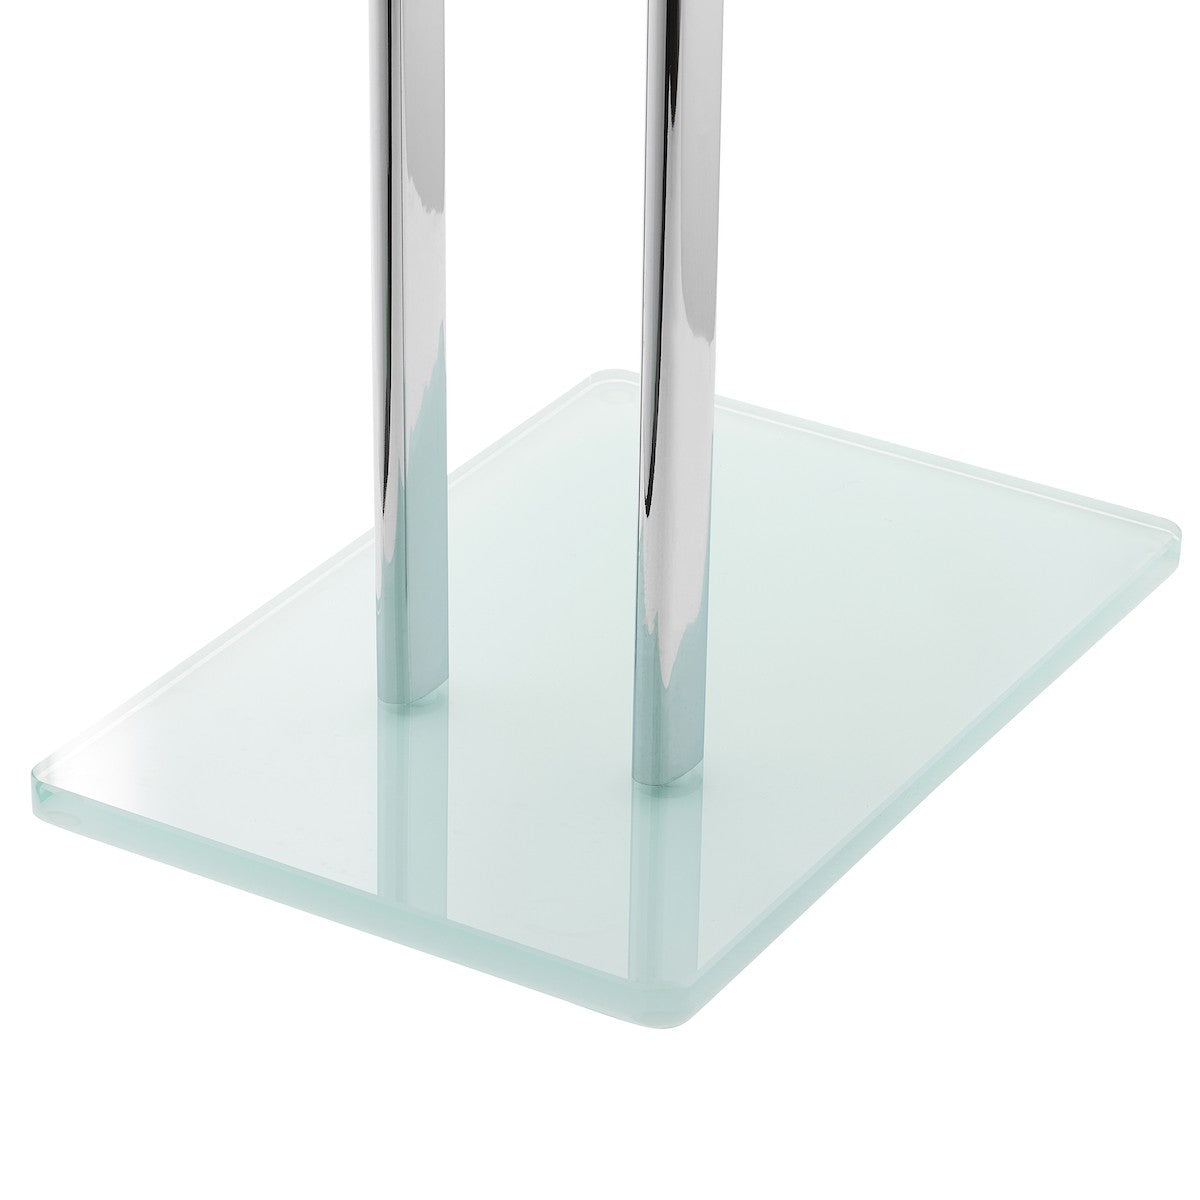 GLASDRZRUCB Optima Glass samostoječe stojalo za brisače